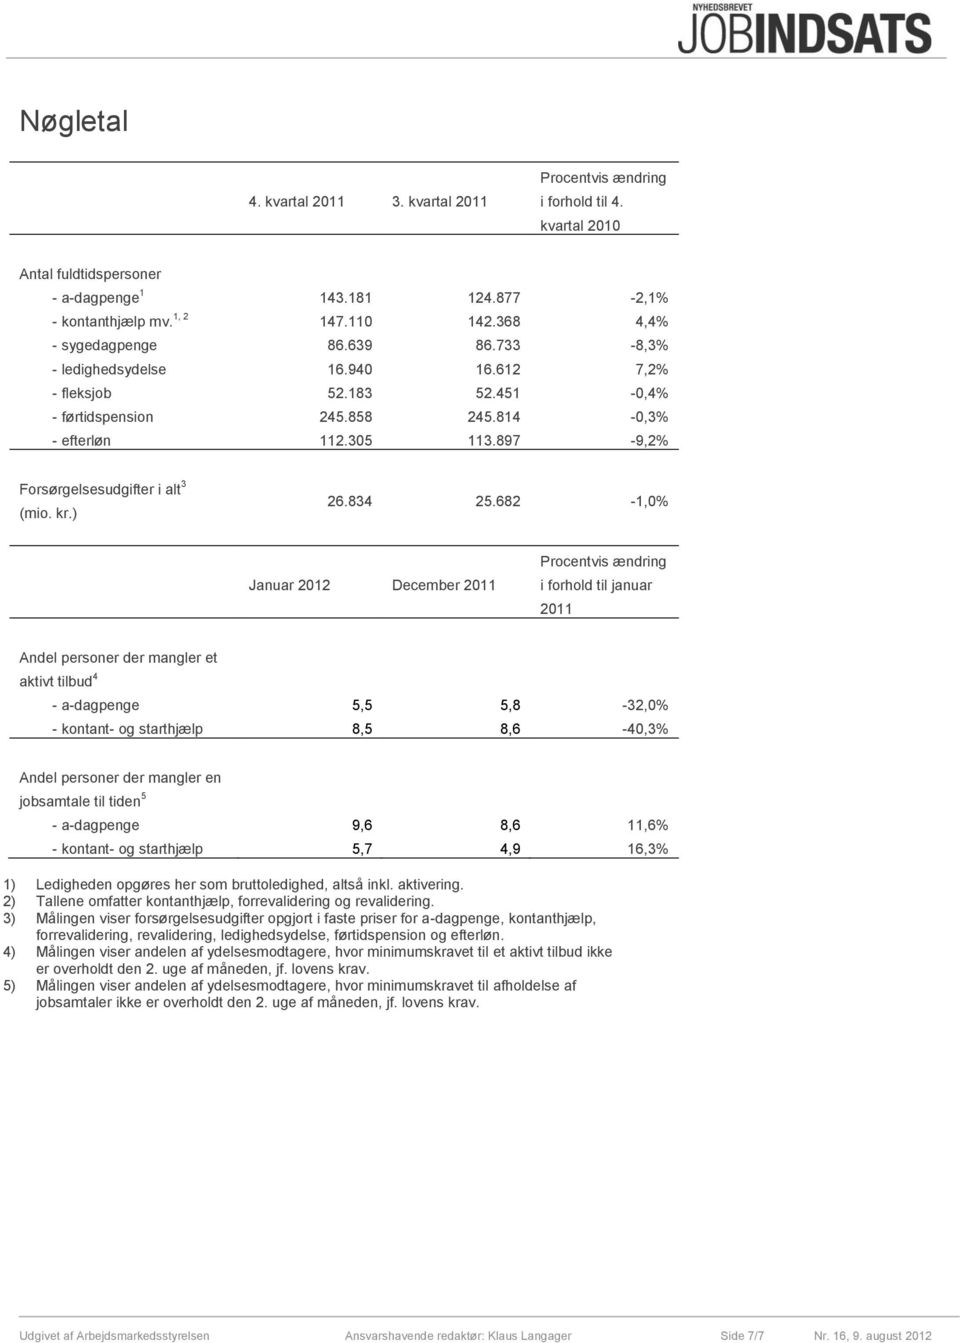 897-9,2% Forsørgelsesudgifter i alt 3 (mio. kr.) 26.834 25.